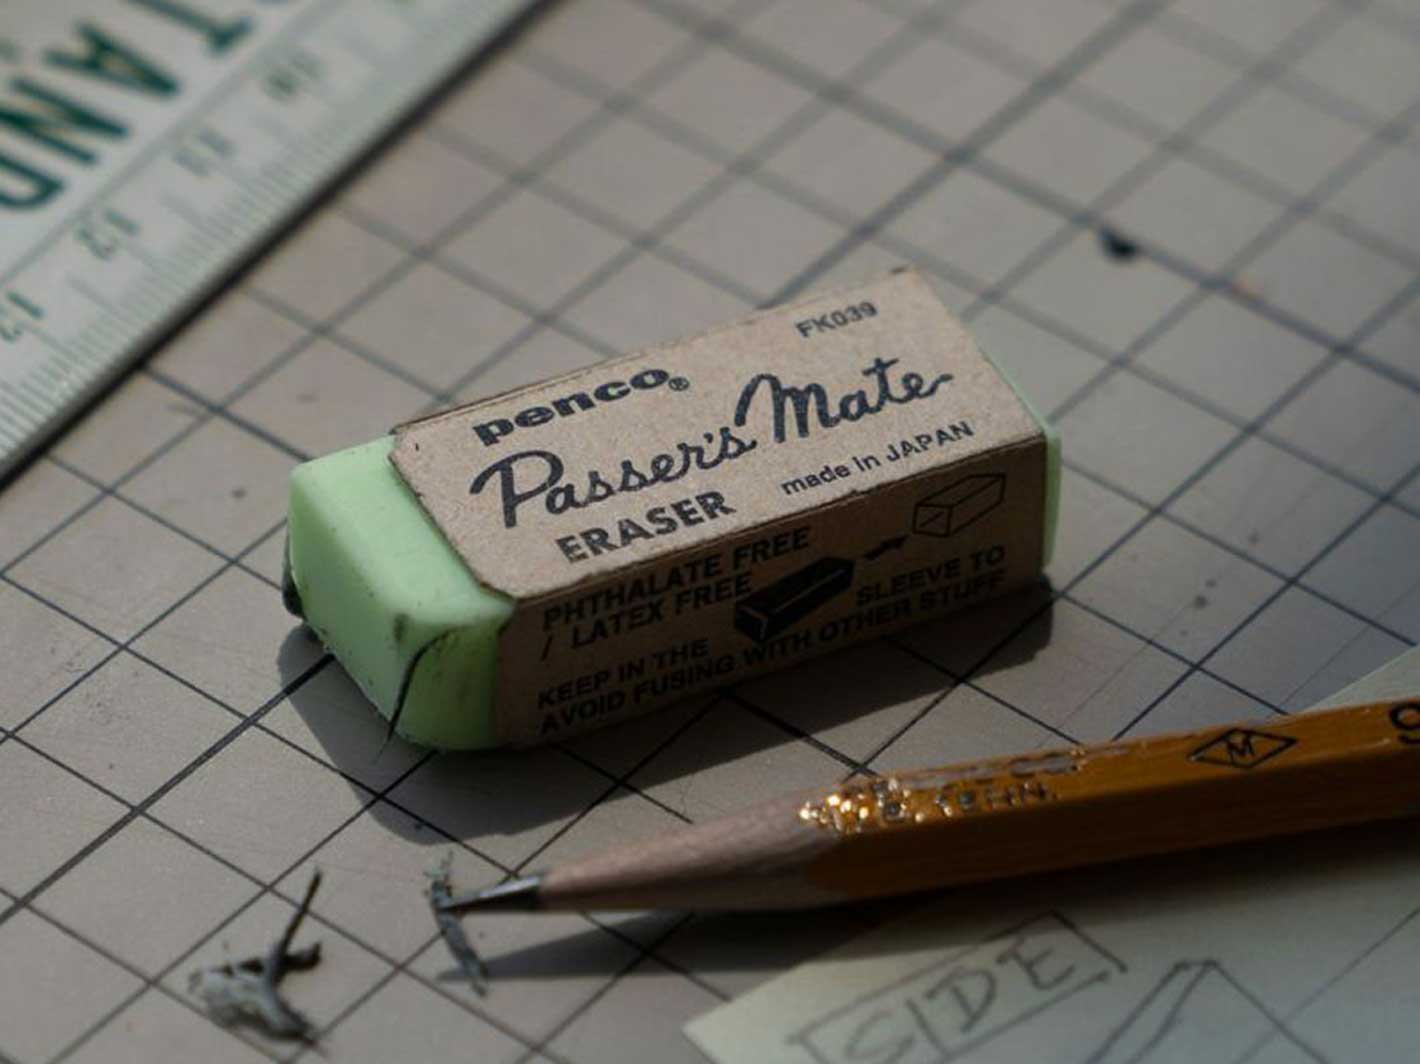 Passer's Mate Eraser